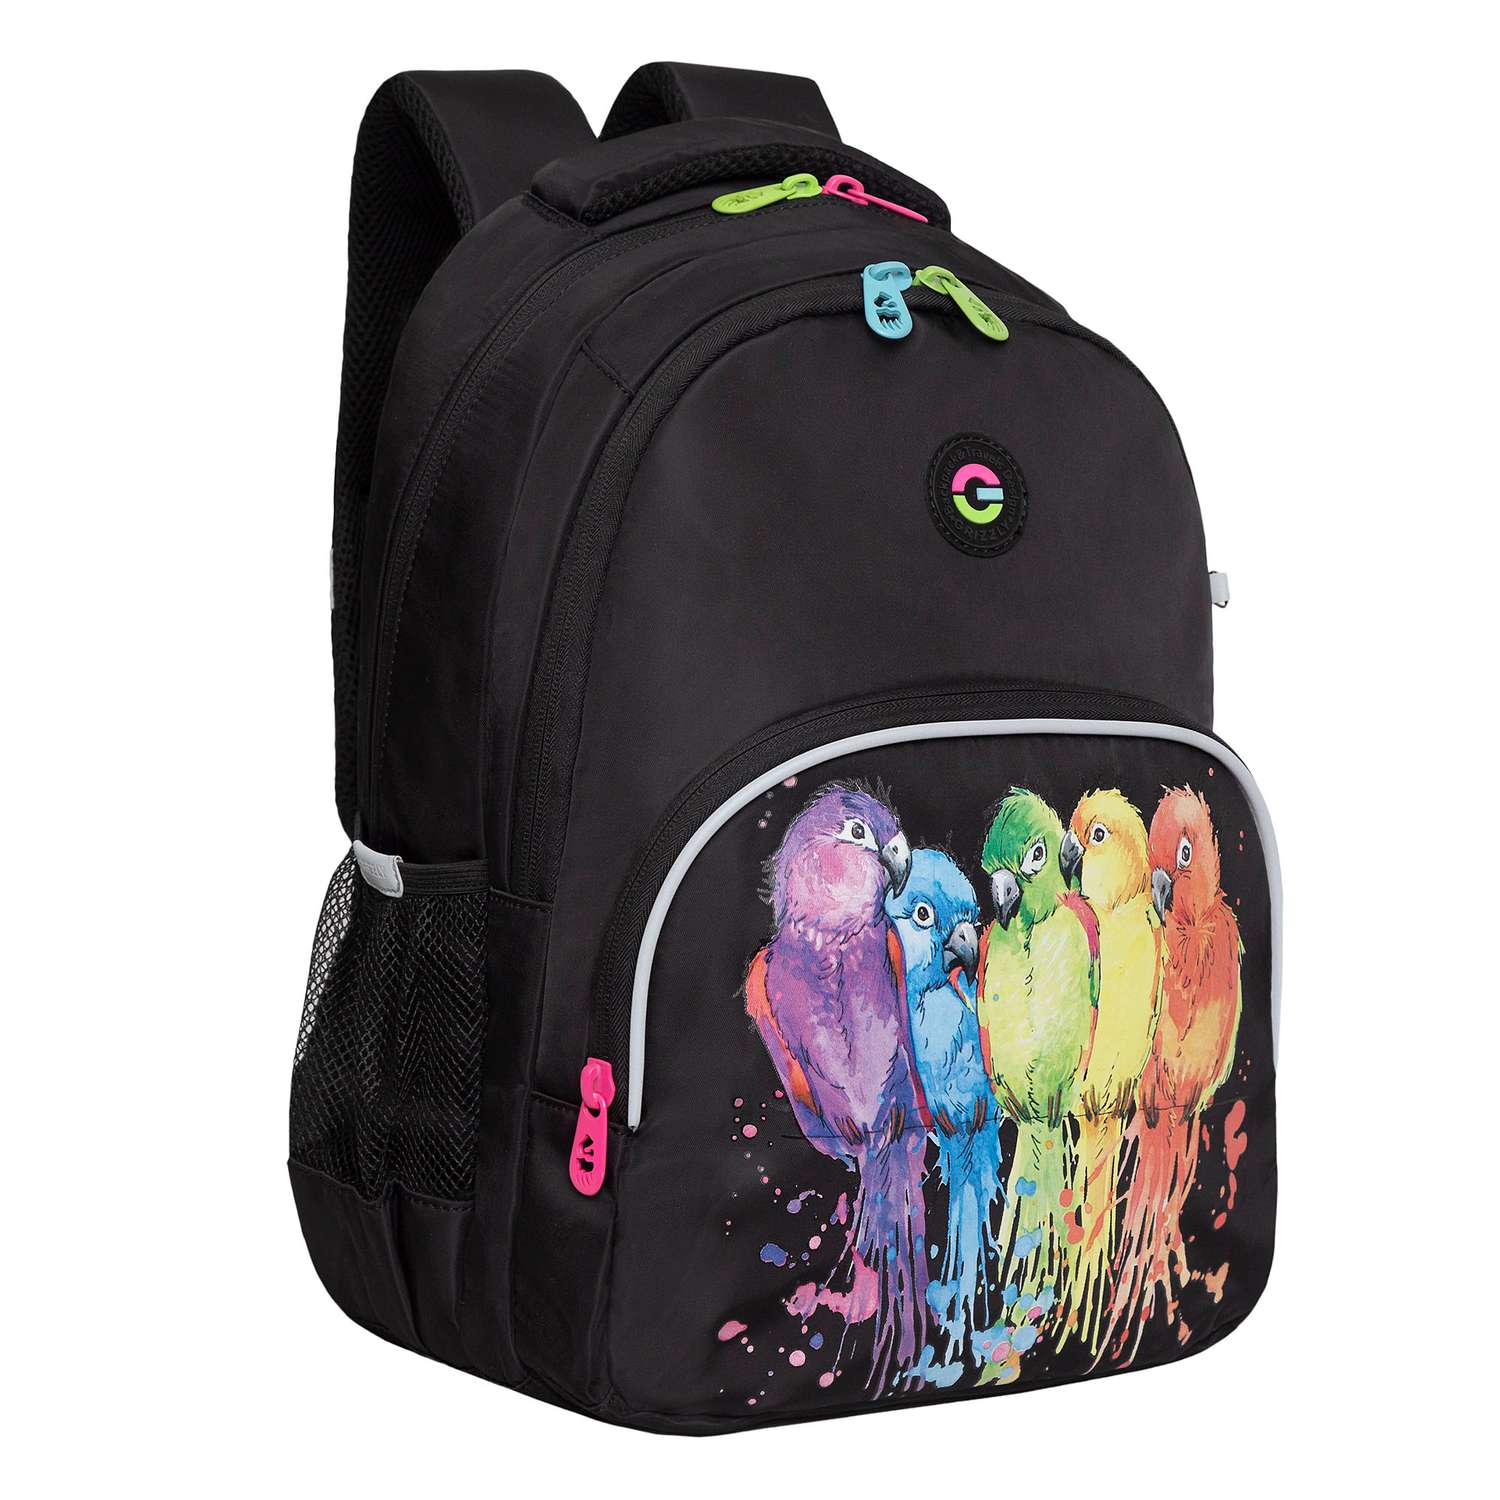 Рюкзак школьный Grizzly Черный RG-360-6/1 - фото 1